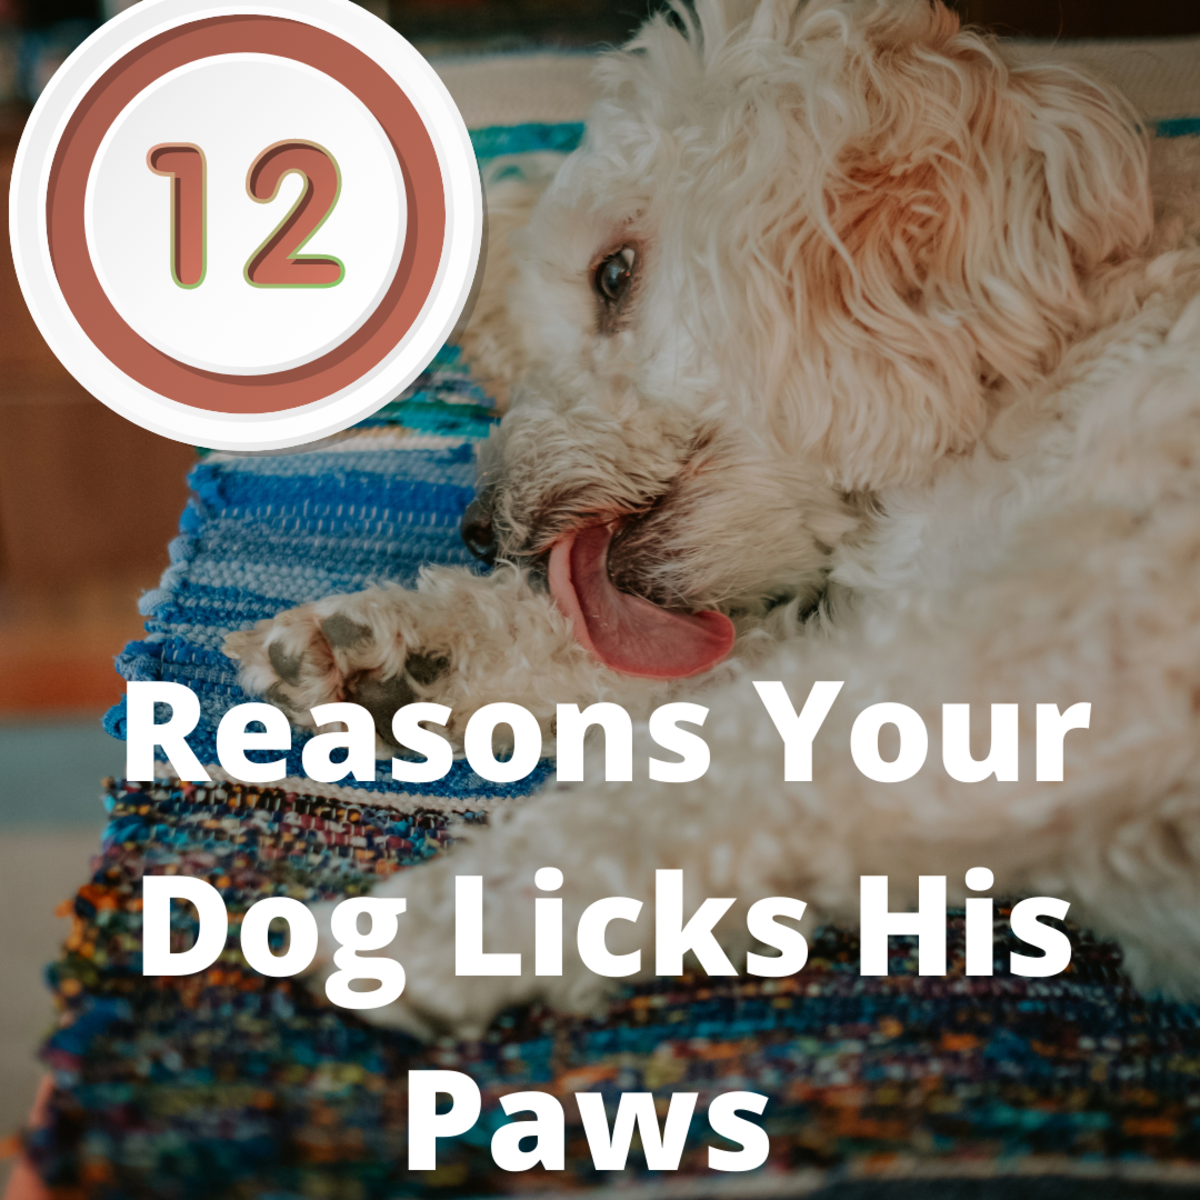 Dog licking mans penis